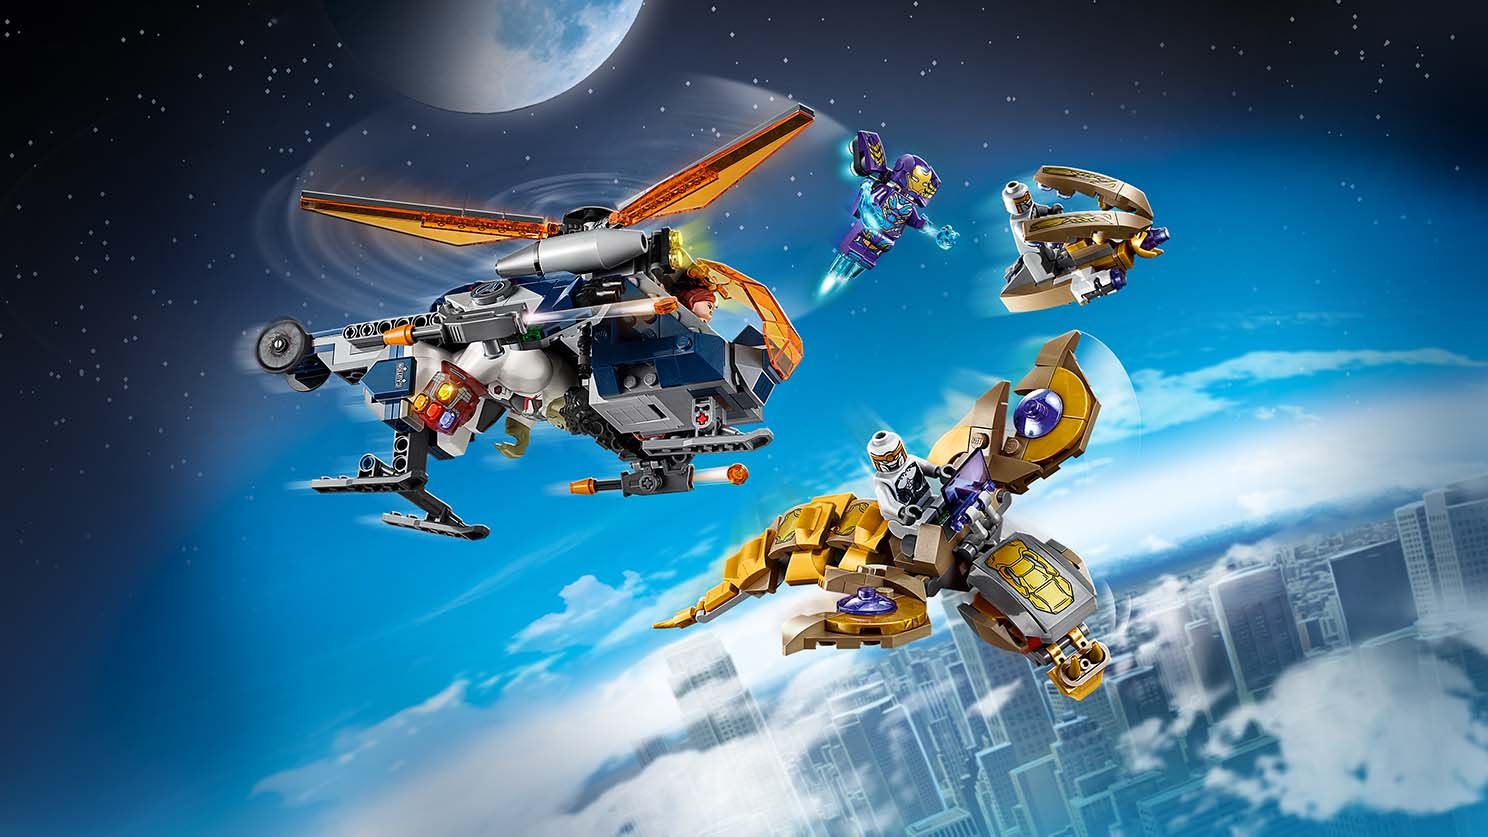 LEGO Super Heroes 76144 Avengers Hulk Helikopter Rettung LEGO_76144_WEB_SEC01_1488.jpg